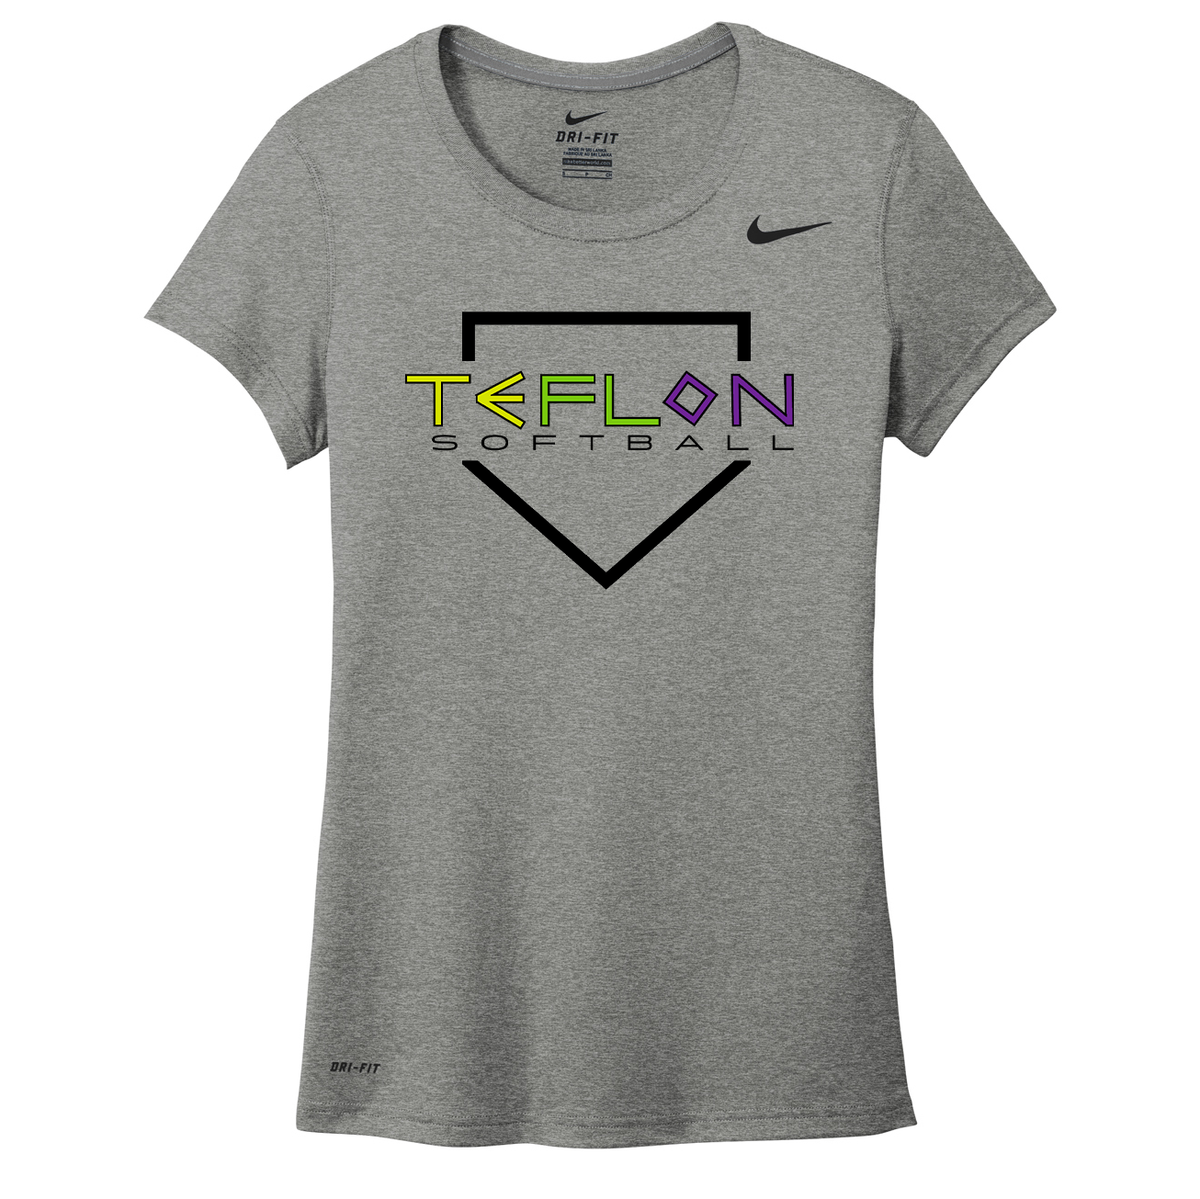 Team Teflon Softball Nike Ladies Legend Tee